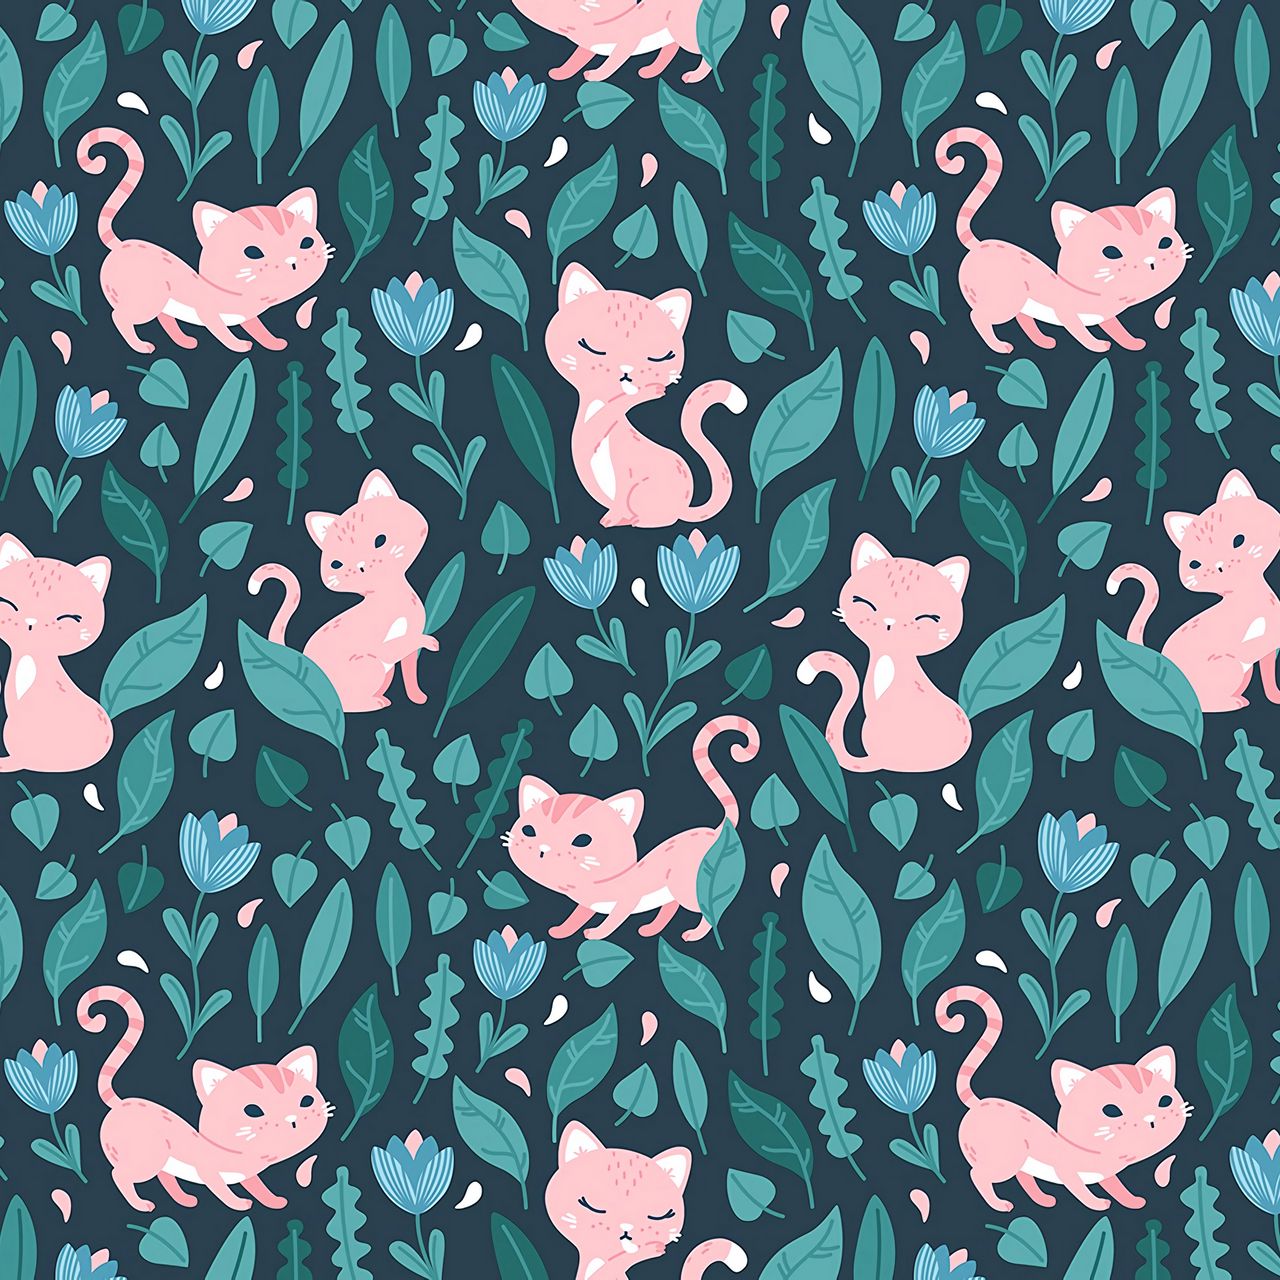 Ai có thể chối từ một tấm Cat wallpaper đáng yêu và dễ thương như thế? Hình ảnh chú mèo béo ú ngủ ngon giữa những cánh hoa hay một chú mèo con nhỏ bé với đôi mắt to tròn đậu nhìn chằm chằm, tất cả đều đem lại cho người xem cảm giác ấm áp, an nhiên.